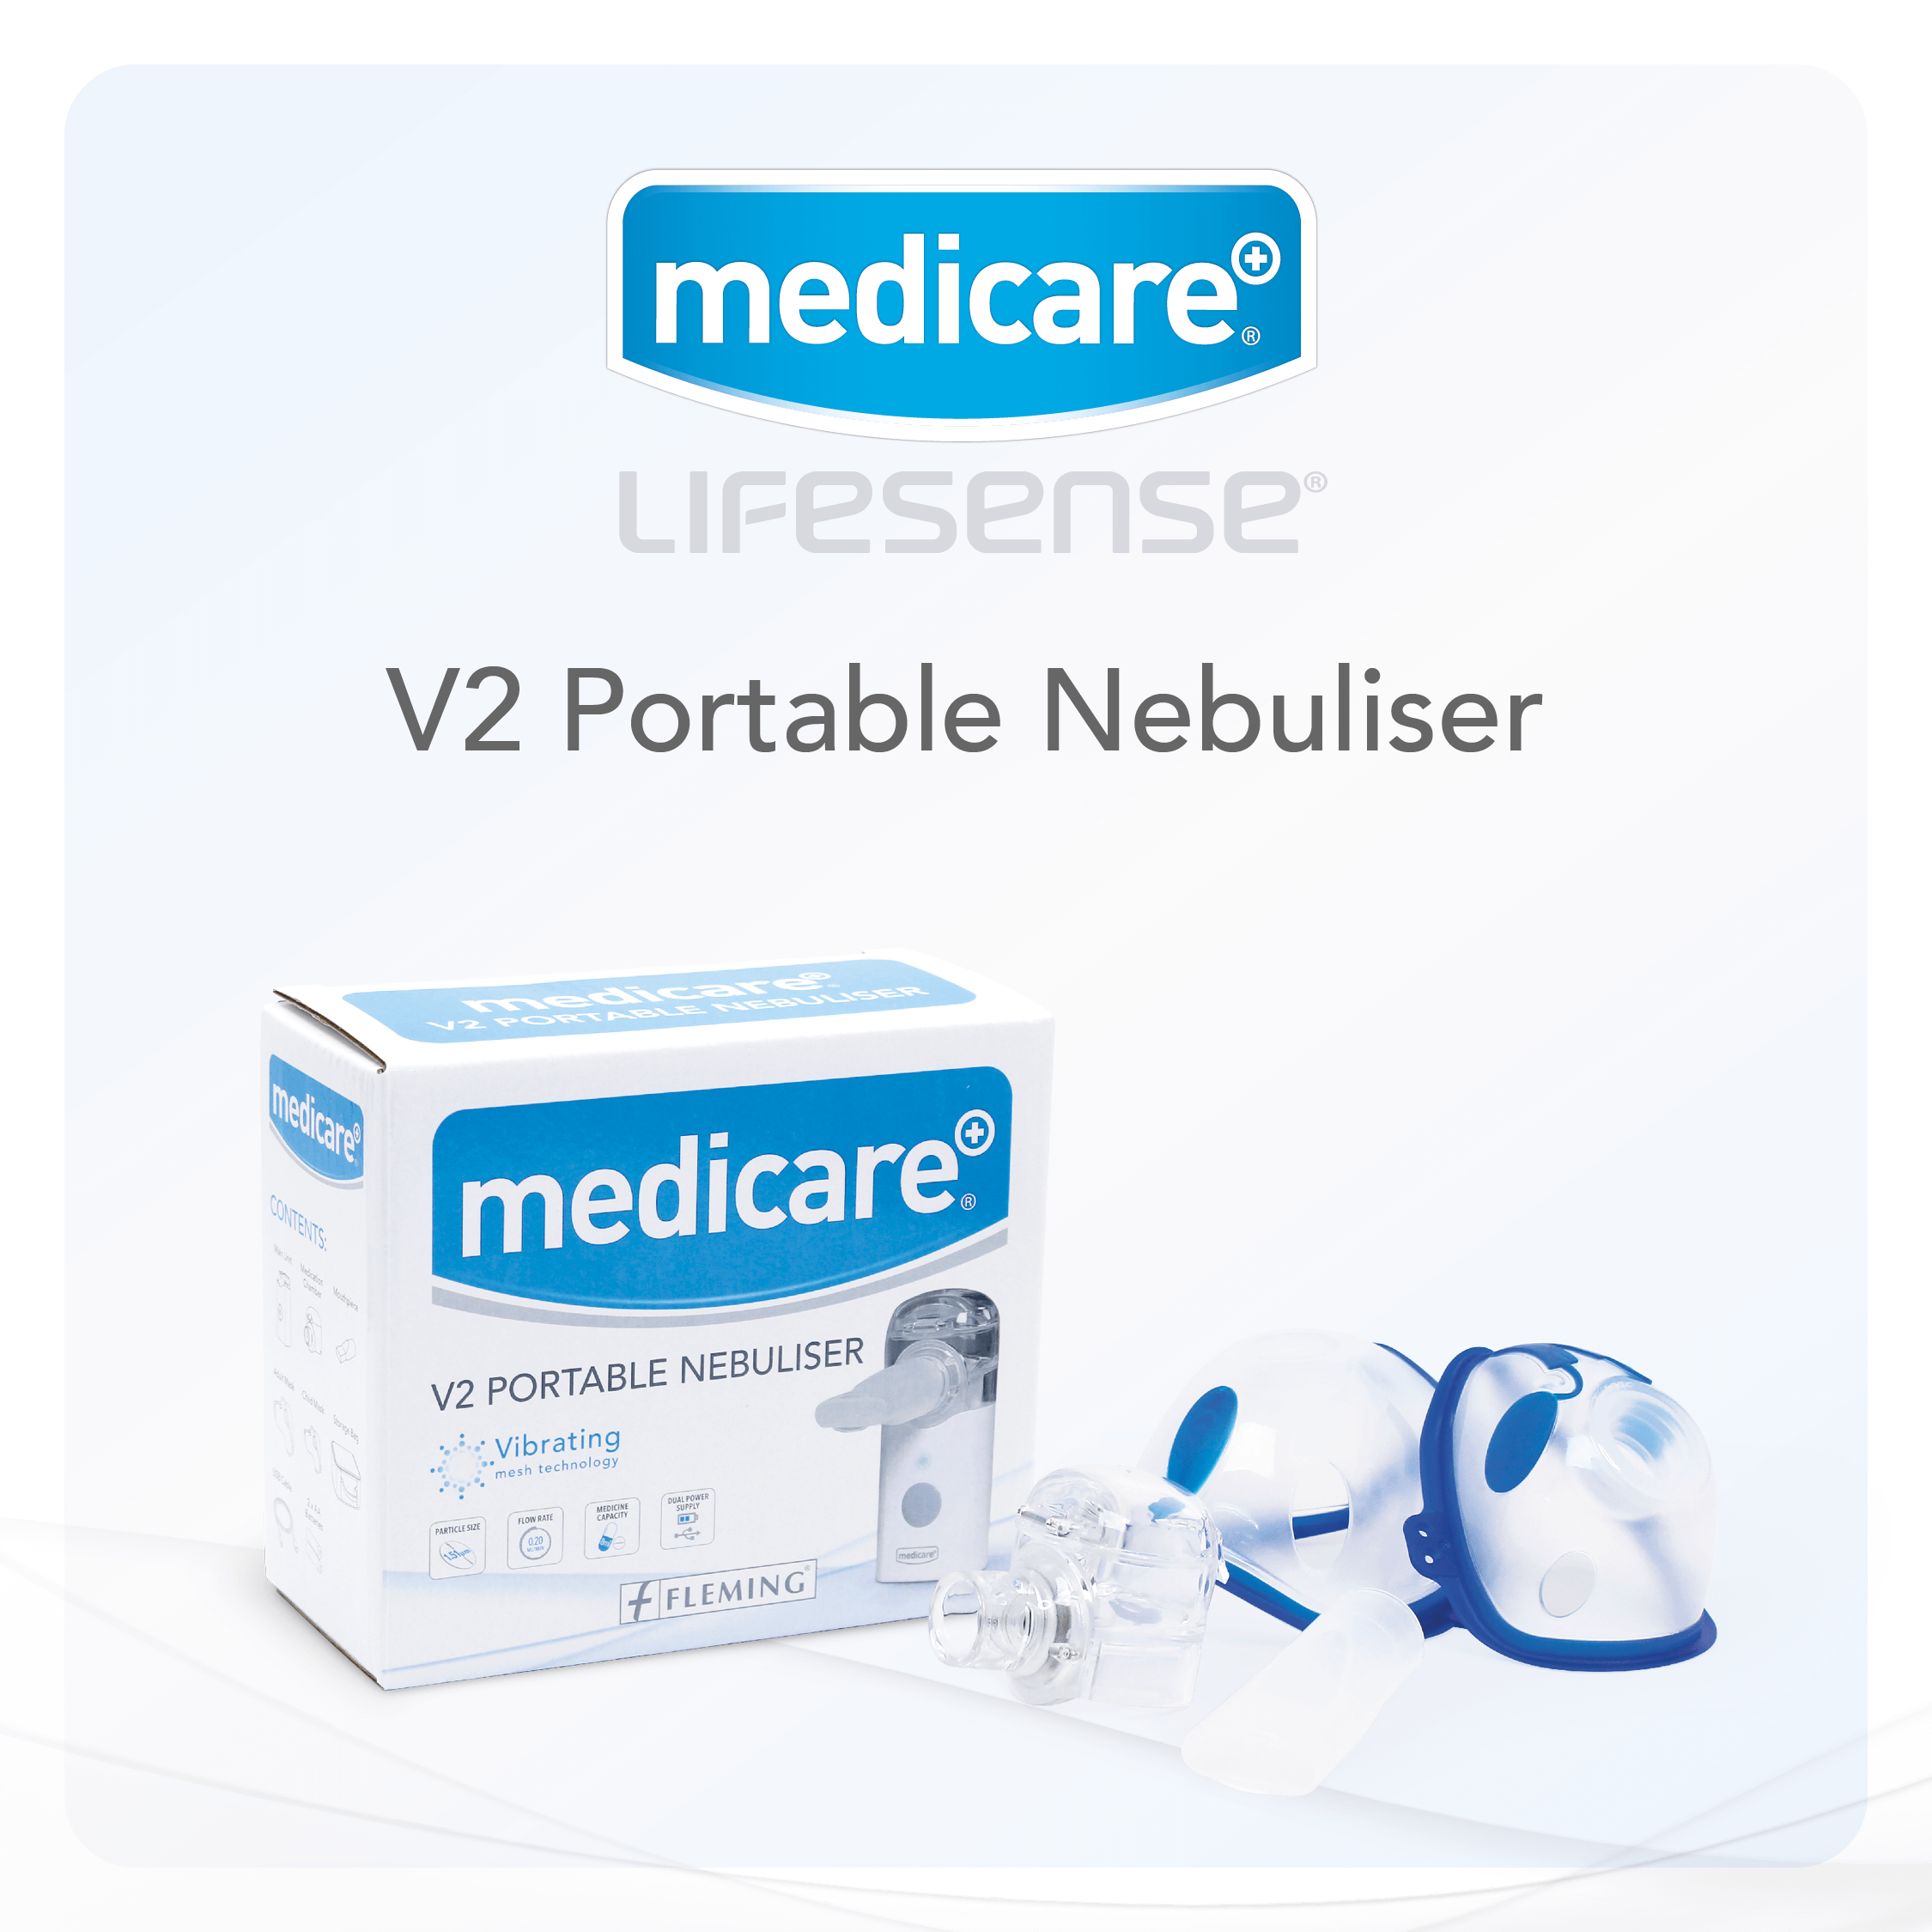 V2 Portable Nebuliser